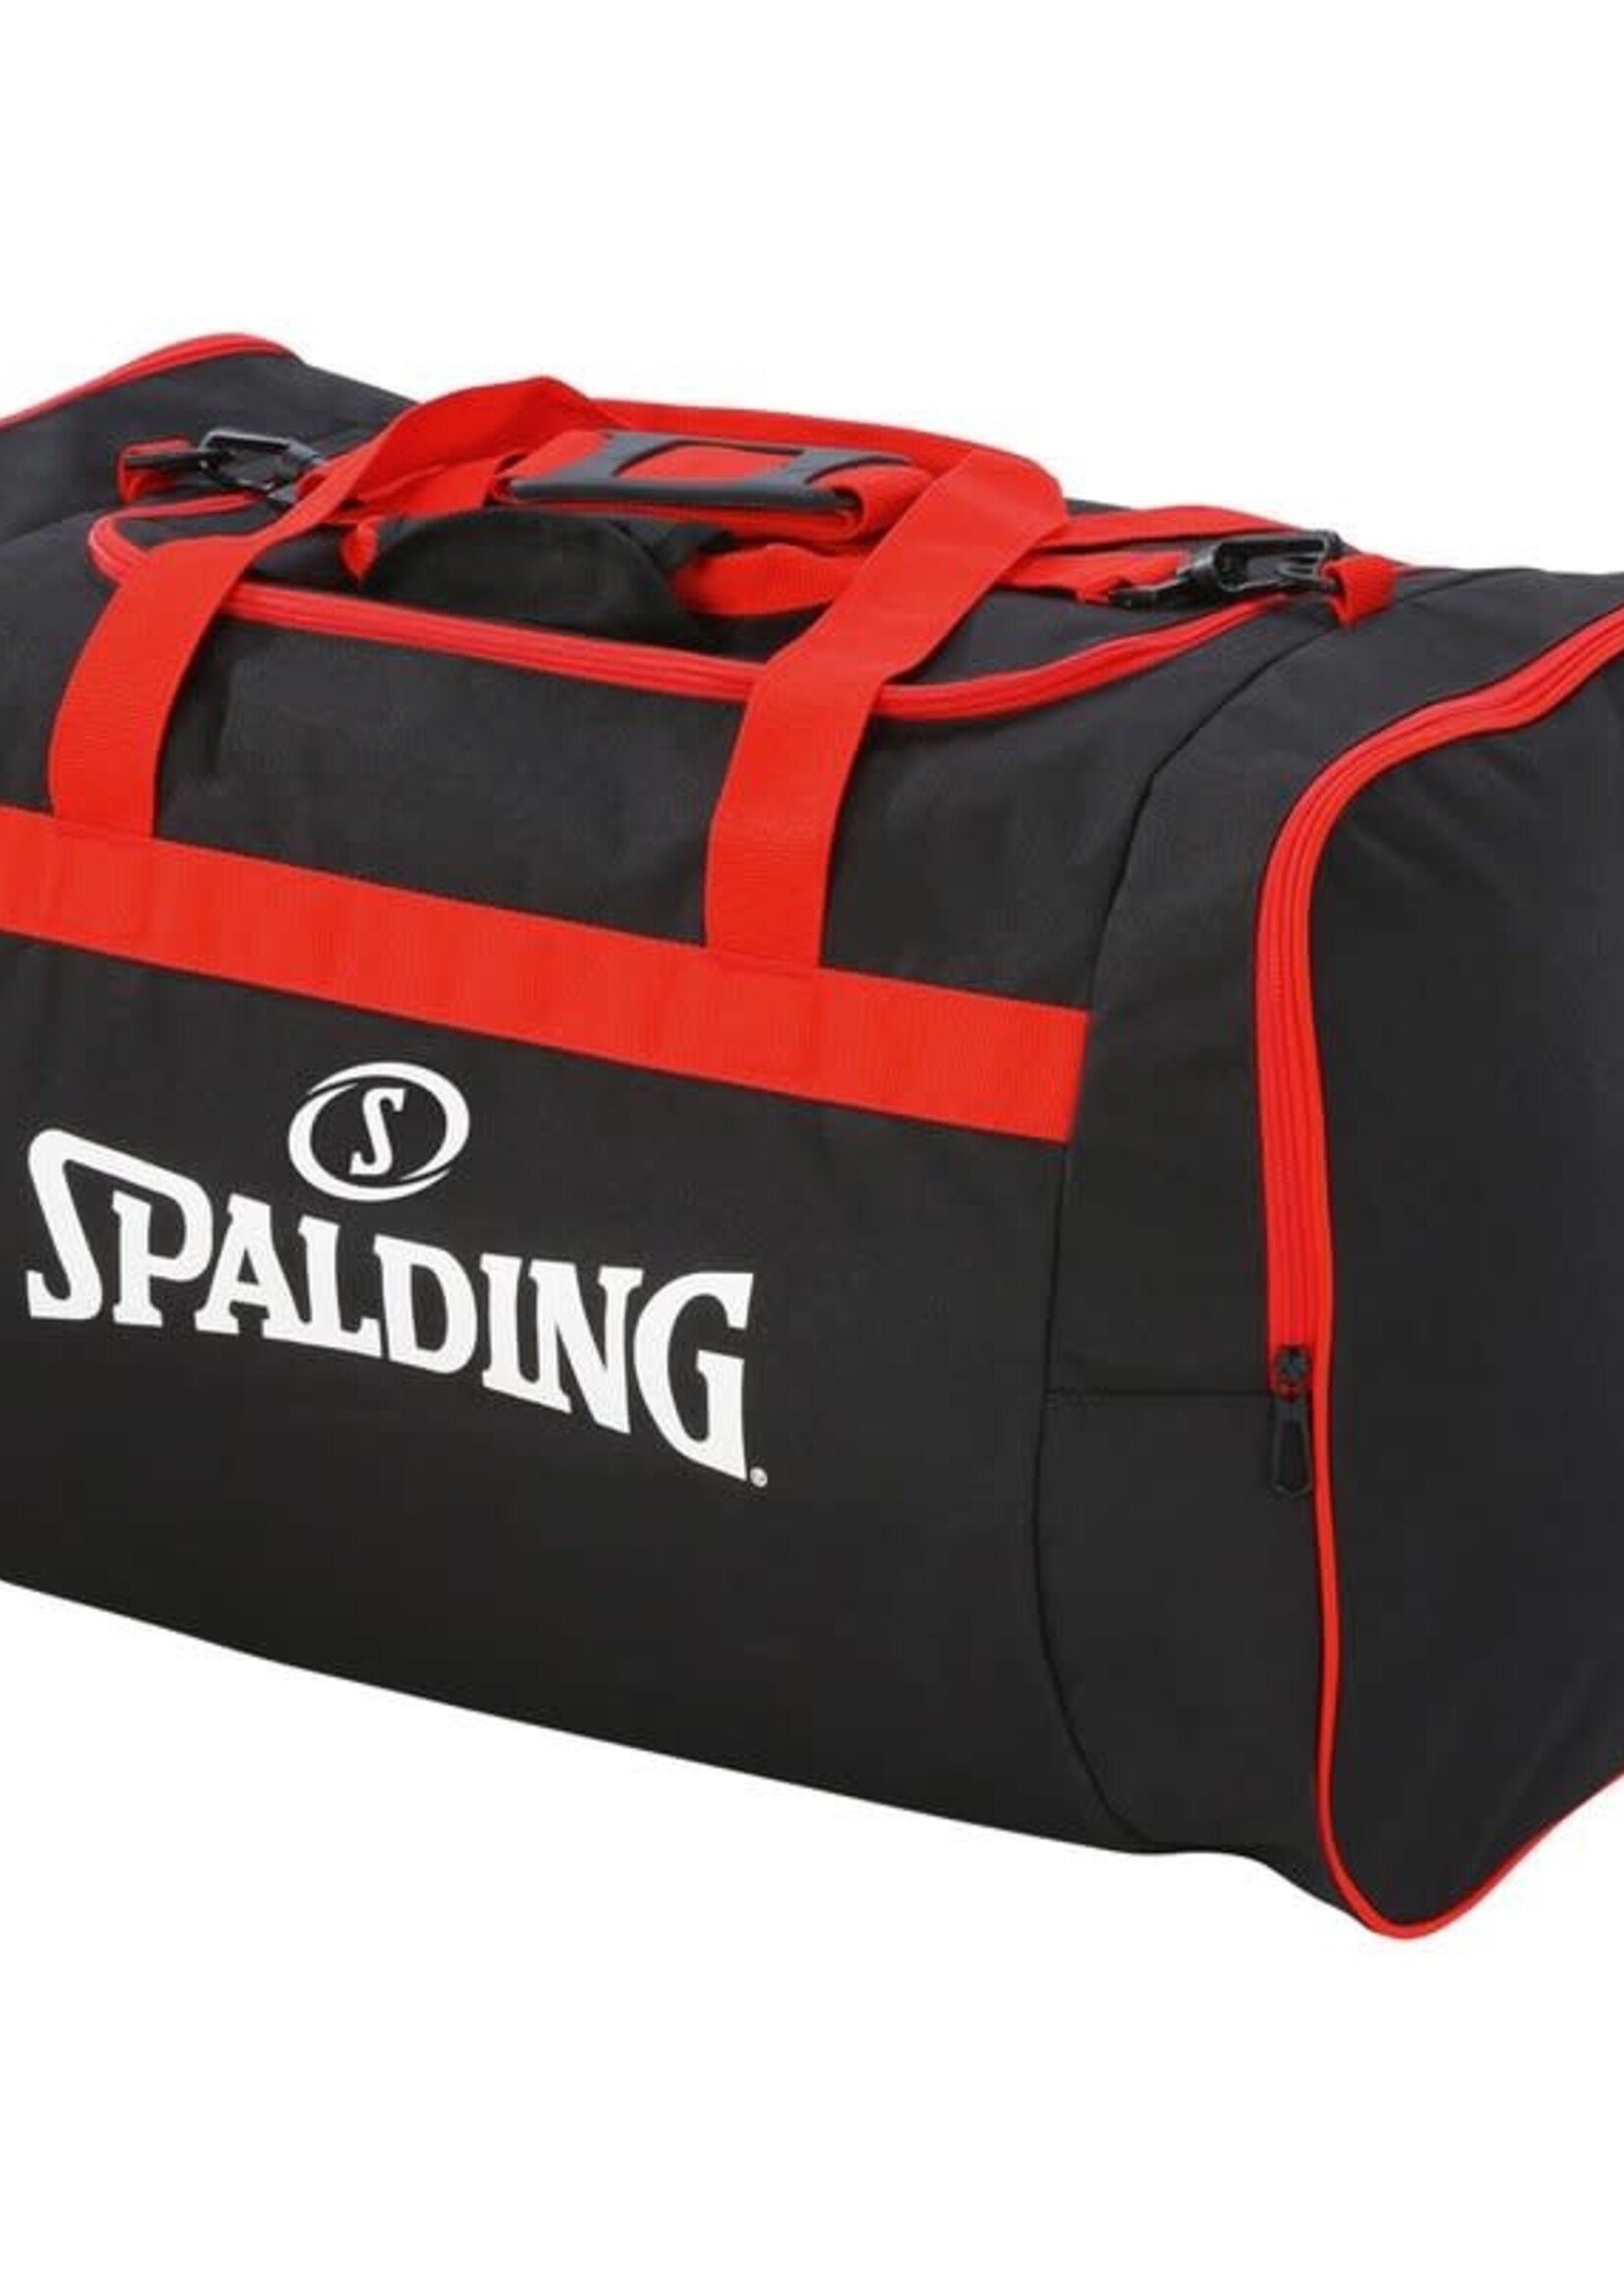 Spalding Team Bag Large 80L Zwart Rood